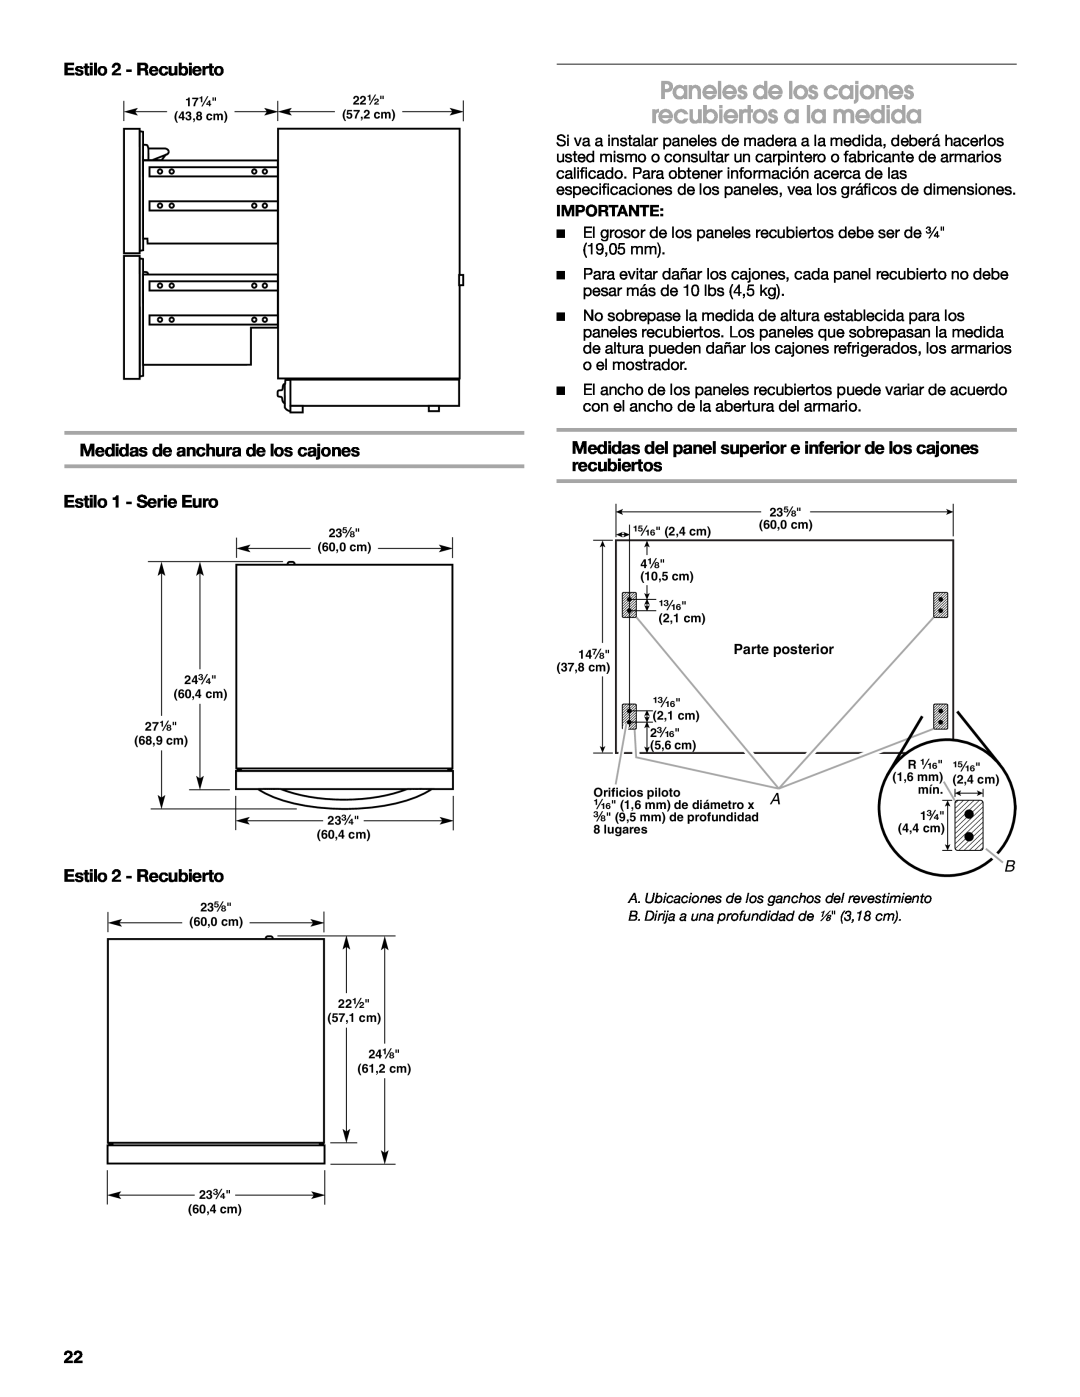 Jenn-Air W10310149A manual Paneles de los cajones recubiertos a la medida, Medidas de anchura de los cajones, Importante 